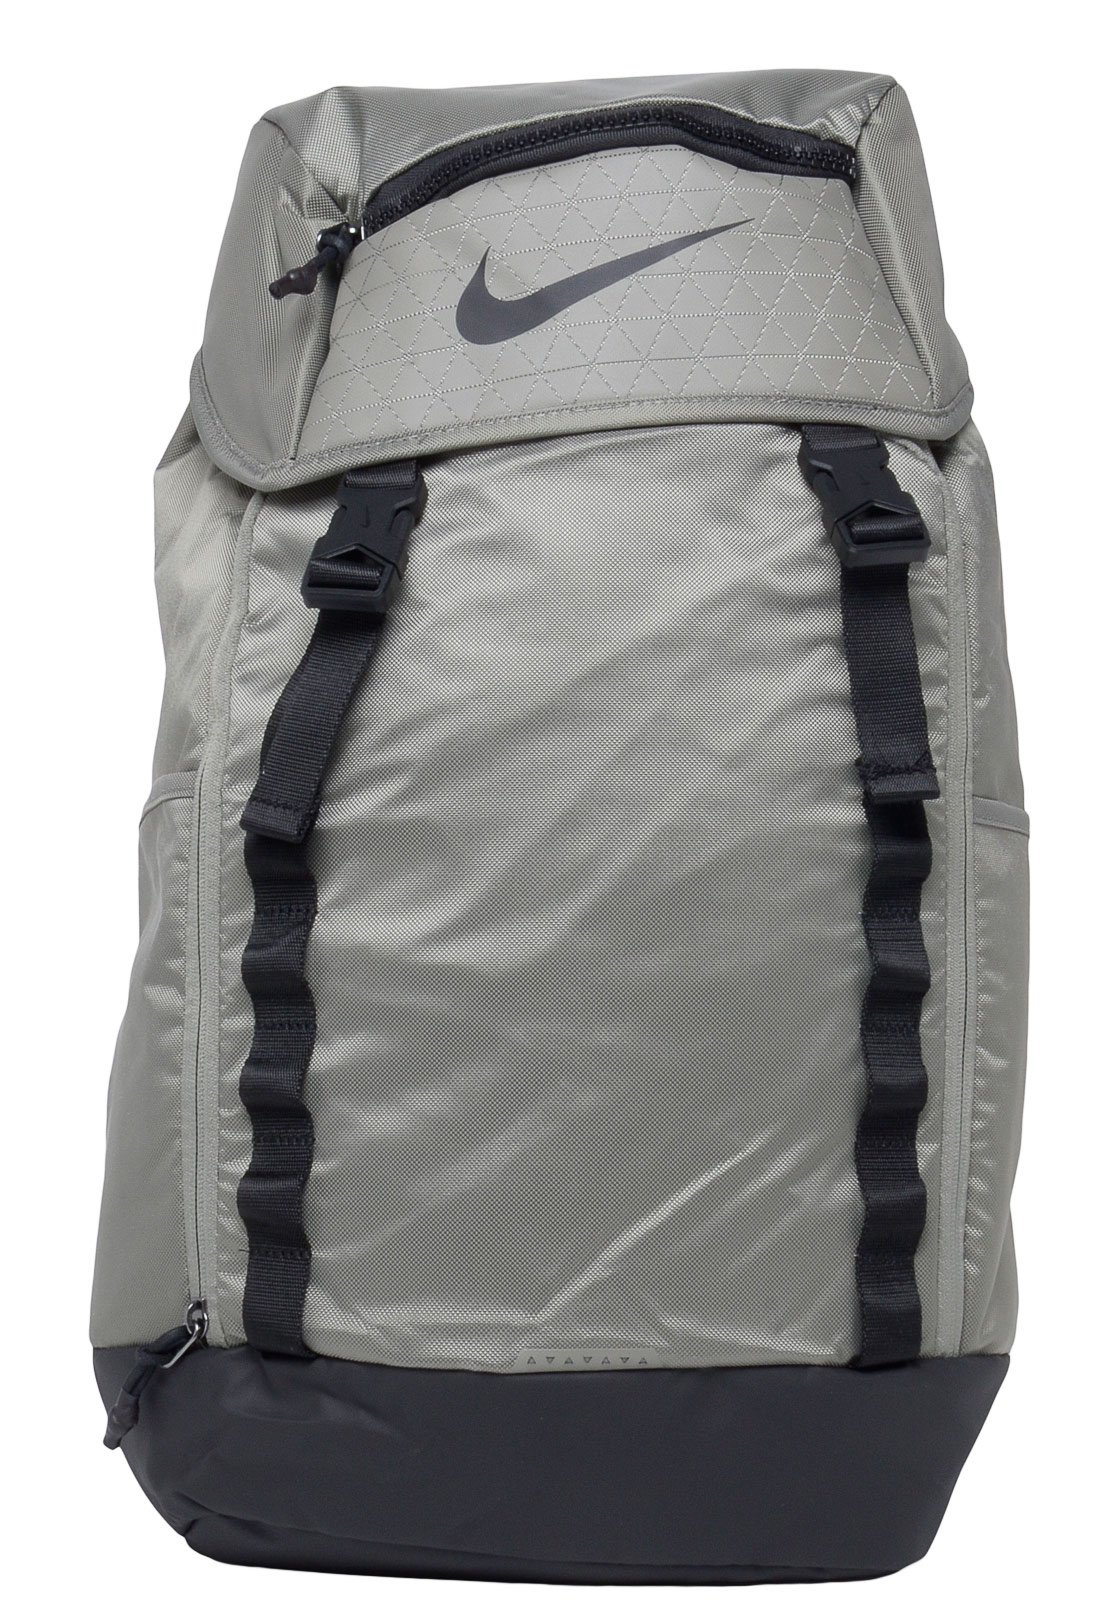 Nike Vapor Backpack 2.0 Verde - Compre | Dafiti Brasil